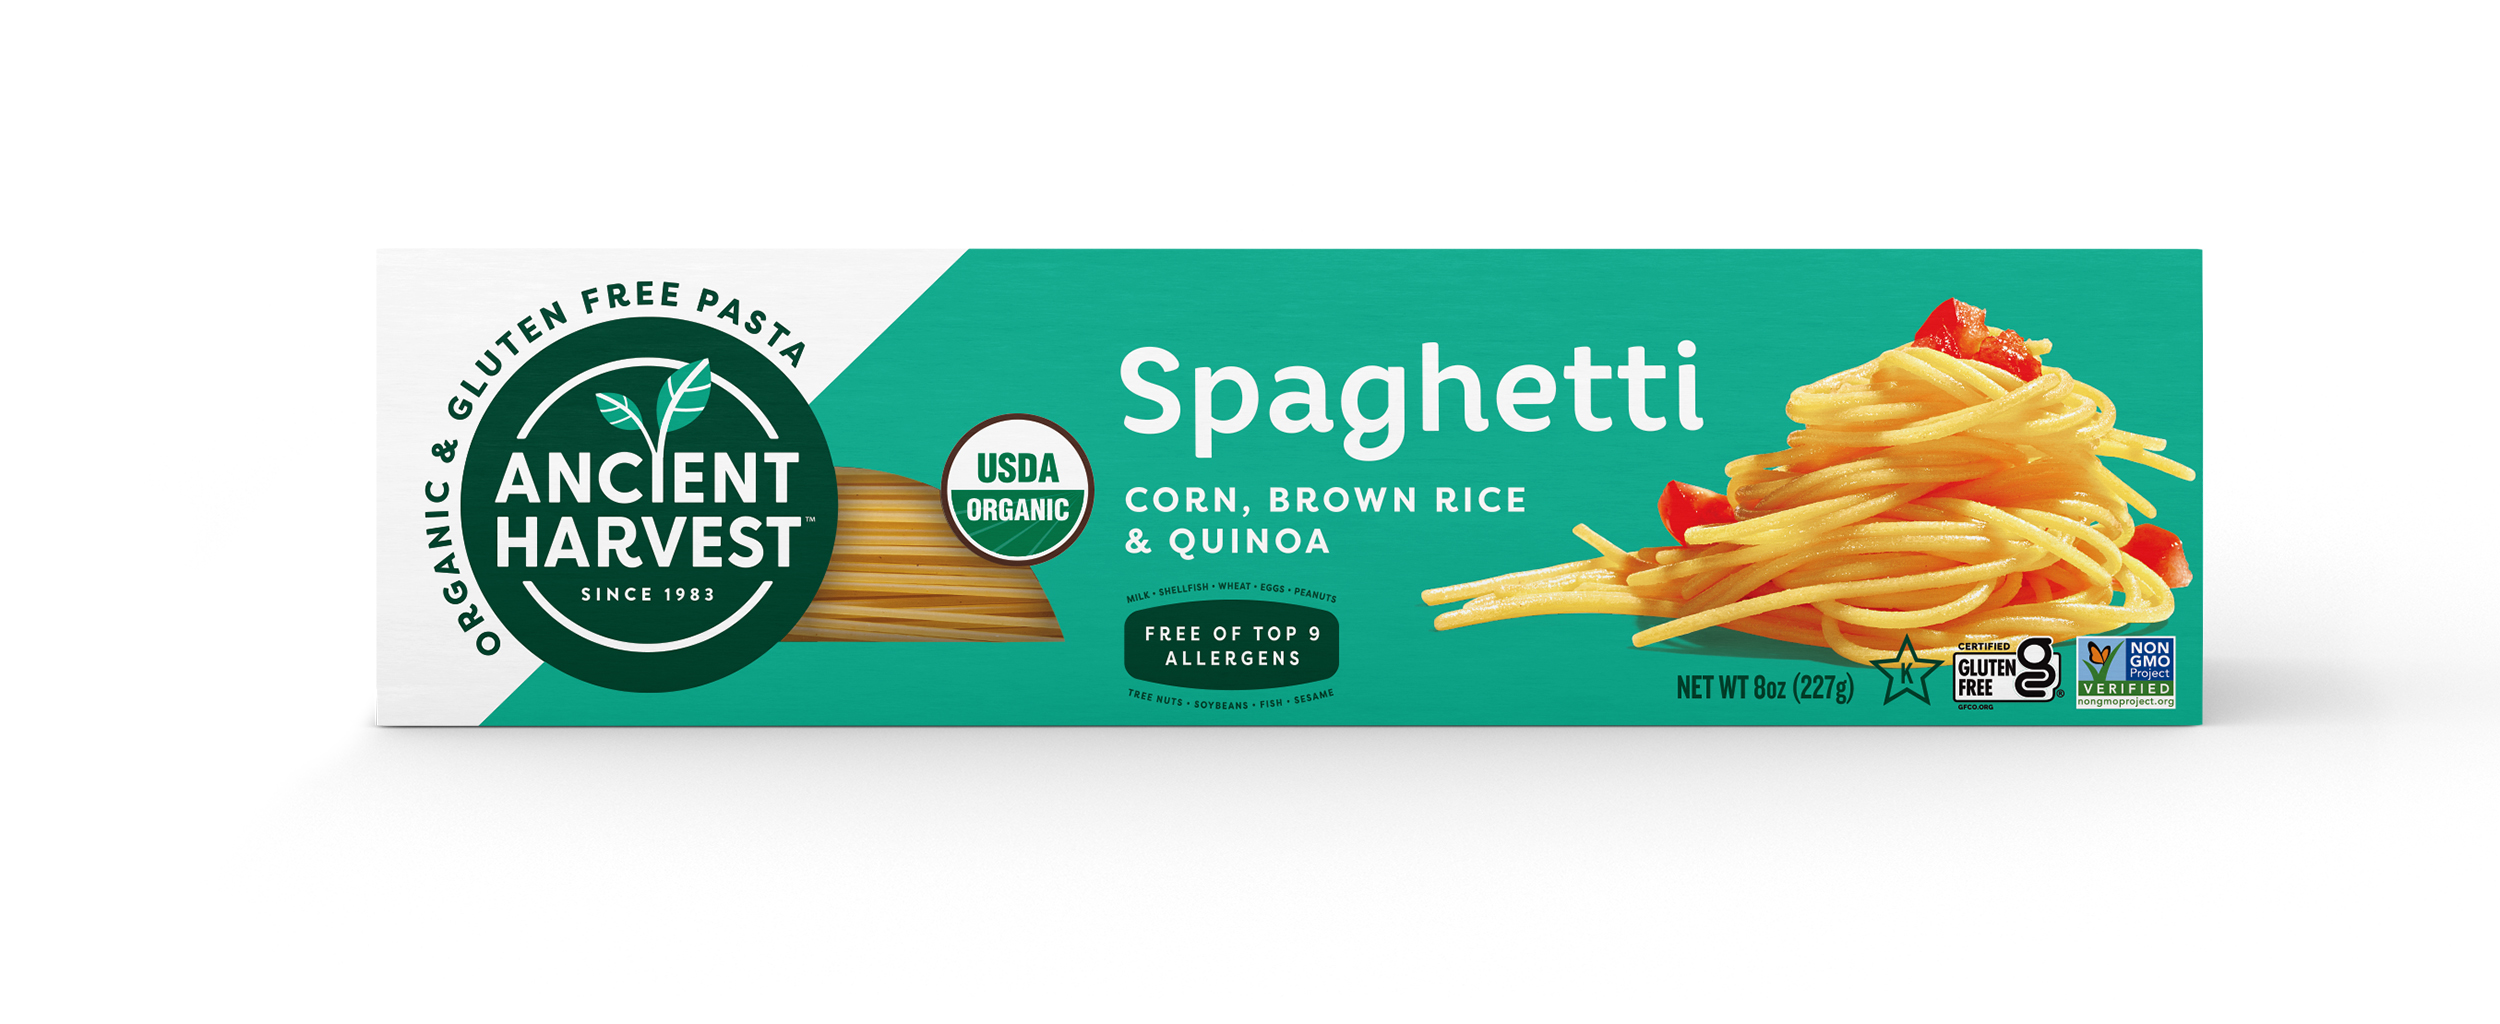 Ancient Harvest Organic Corn, Brown Rice & Quinoa Pasta Spaghetti 12 units per case 8.0 oz